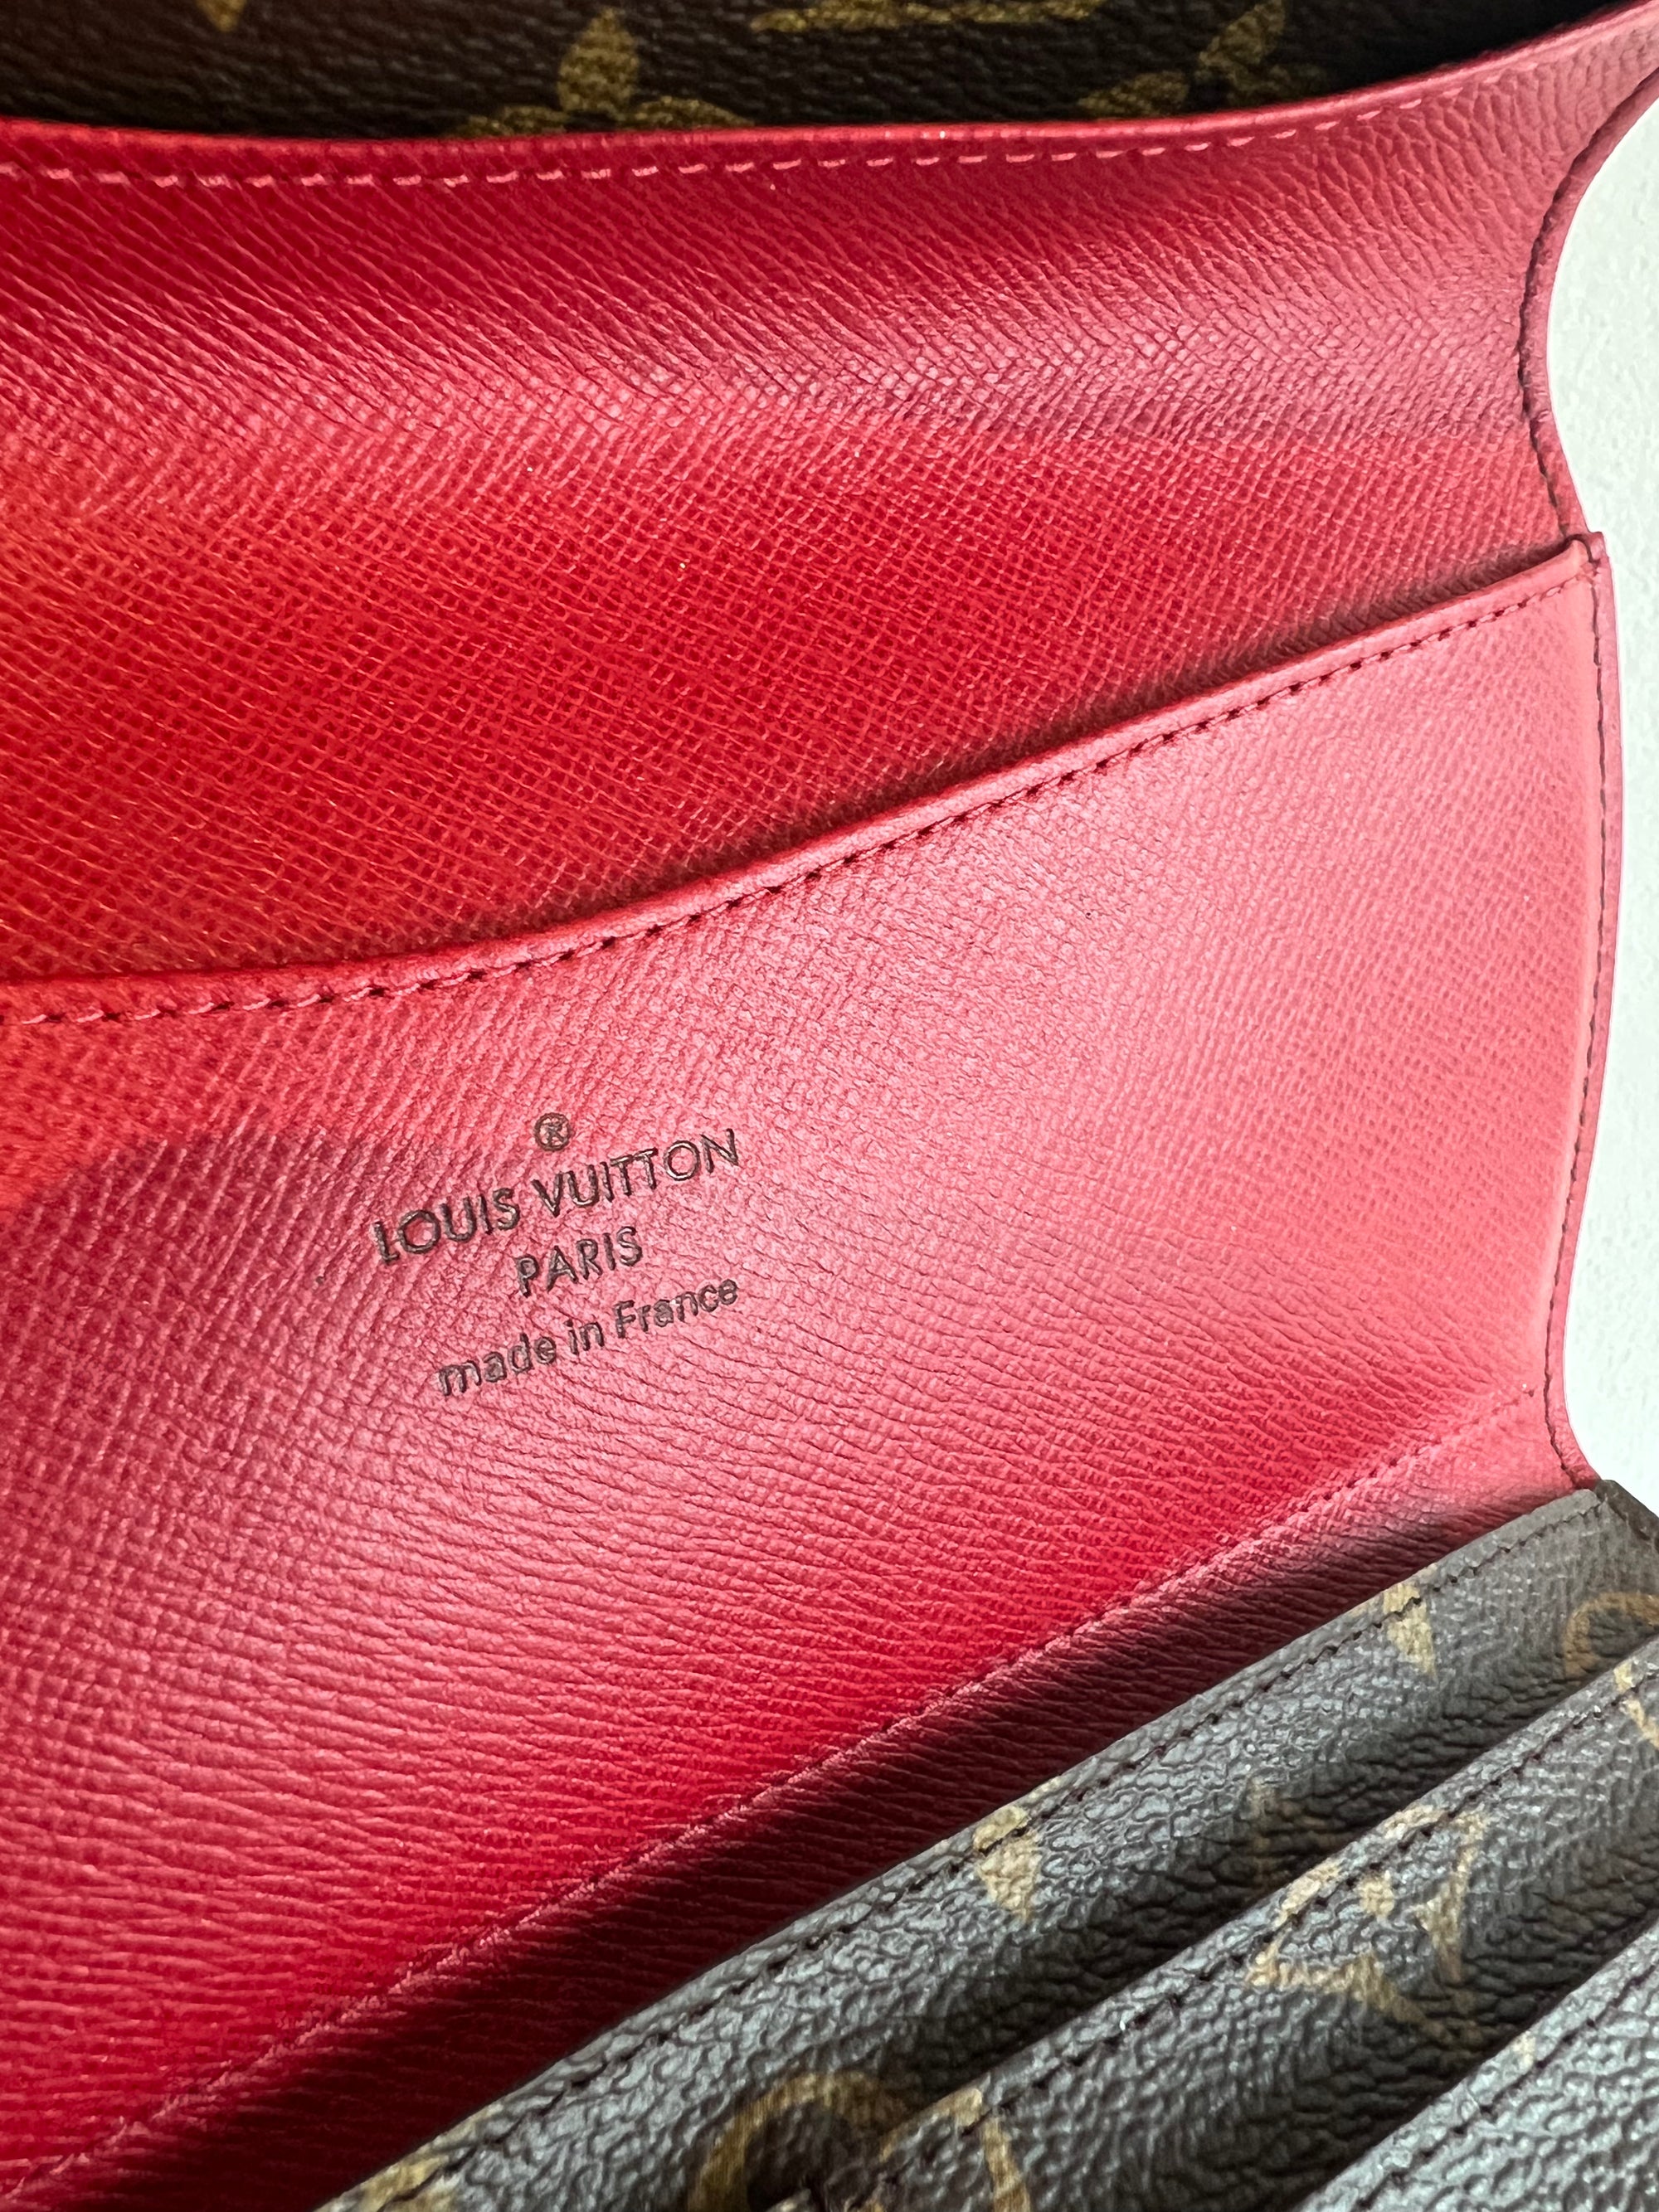 Louis Vuitton Emilie Monogram Reverse Wallet